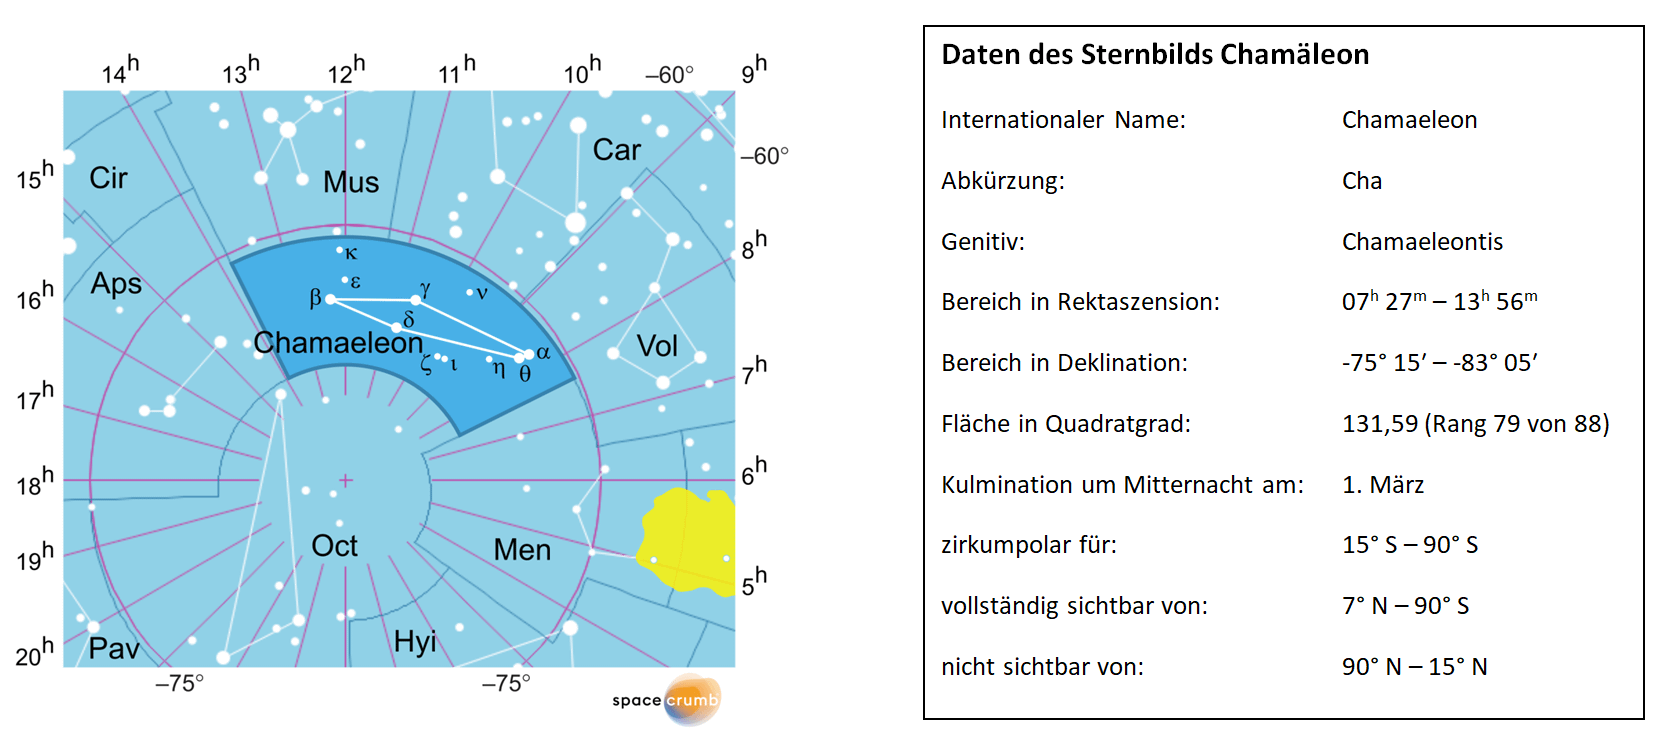 Links zeigt eine mit Koordinaten versehene Karte eines Himmelsausschnitts weiße Sterne auf hellblauem Hintergrund. Die Fläche, die das Sternbild Chamäleon einnimmt, ist dunkelblau hervorgehoben. Eine Tabelle rechts gibt wichtige Daten des Sternbilds Chamäleon an.